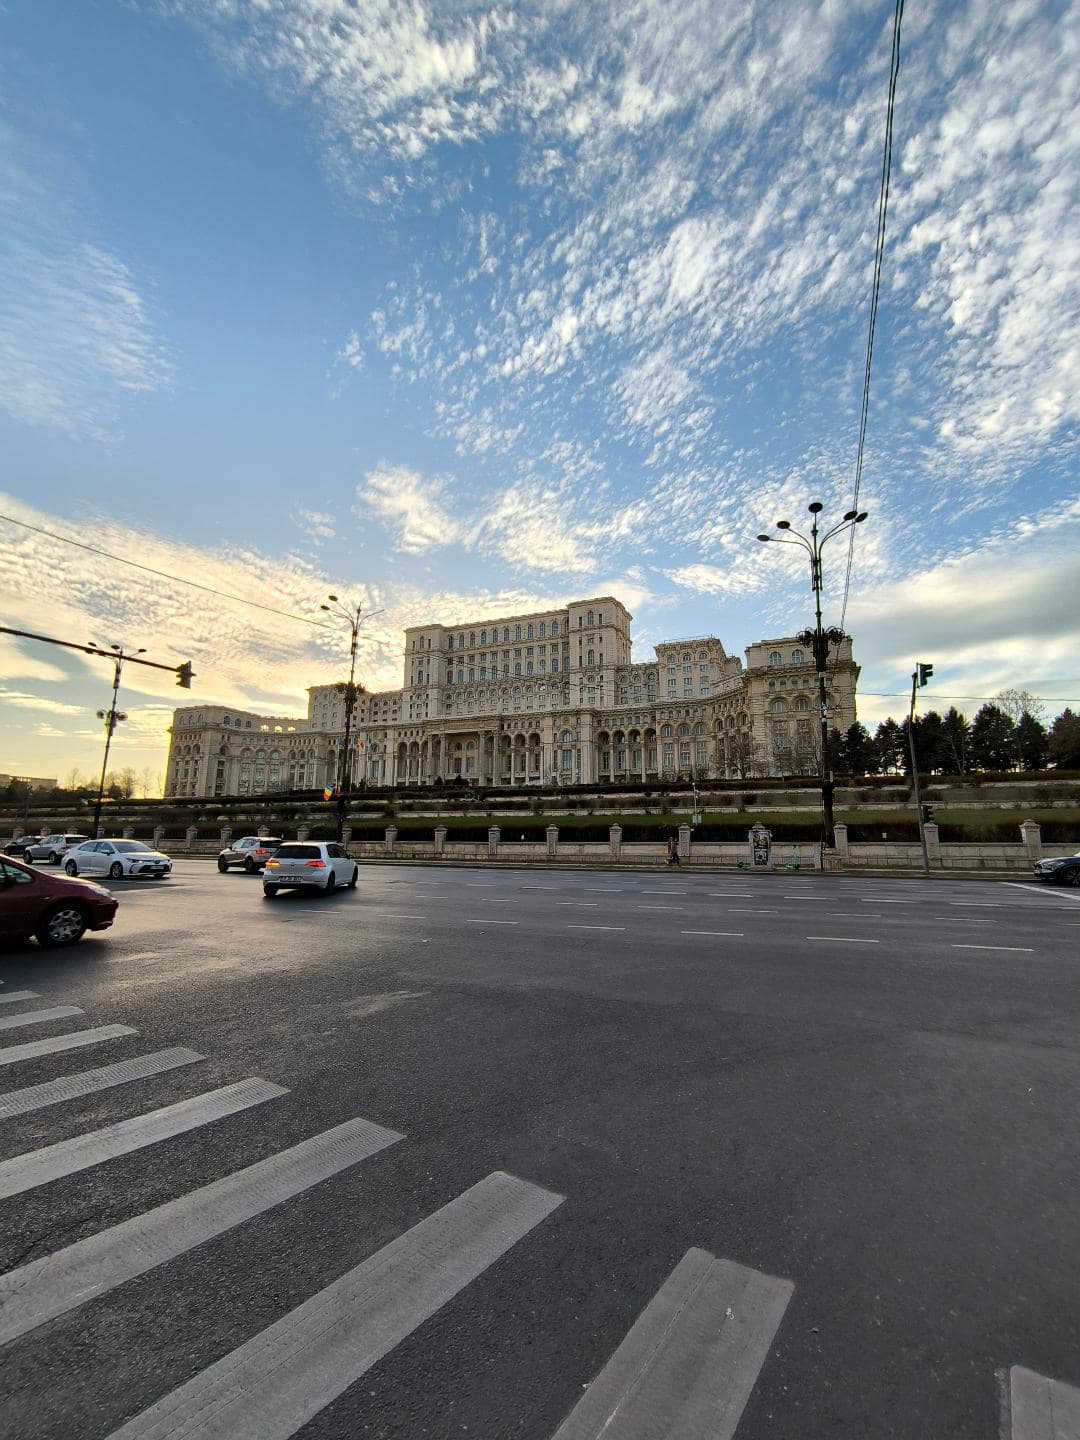 Pohľad na veľkú budovu Palace of Parliament počas západu slnka.